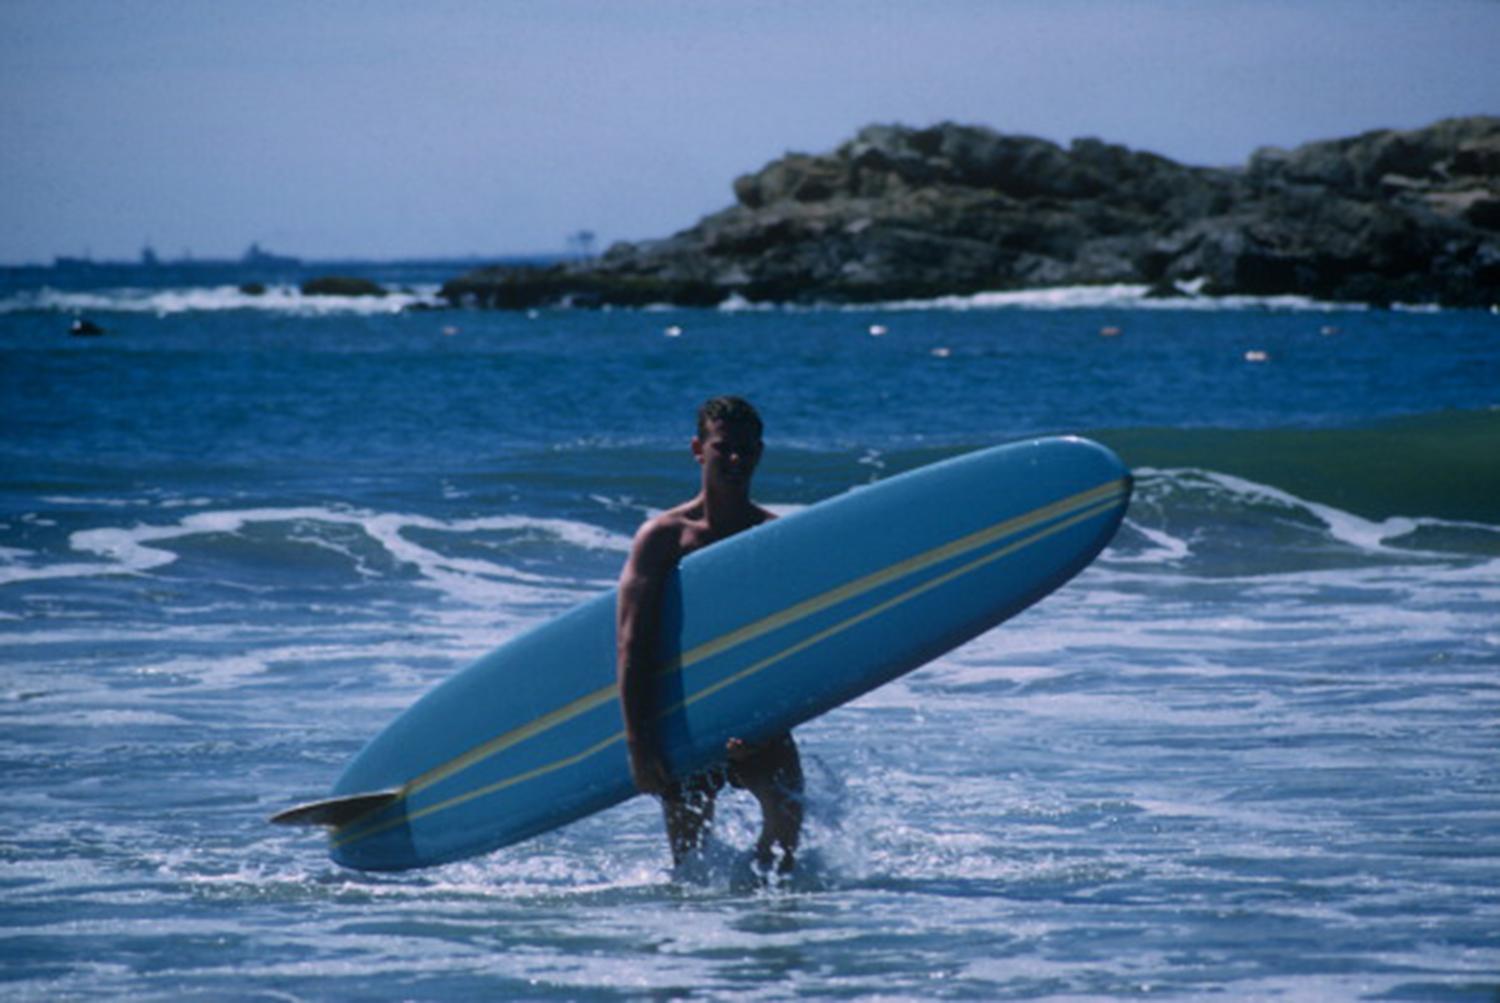 Ein Surfer trägt sein Brett an einem Strand in Rhode Island, September 1965. (Foto: Slim Aarons/Getty Images)

Slim Aarons Estate Edition, inklusive Echtheitszertifikat
Nummeriert und gestempelt vom Slim Aarons Estate

Moderne Nachlassausgabe mit